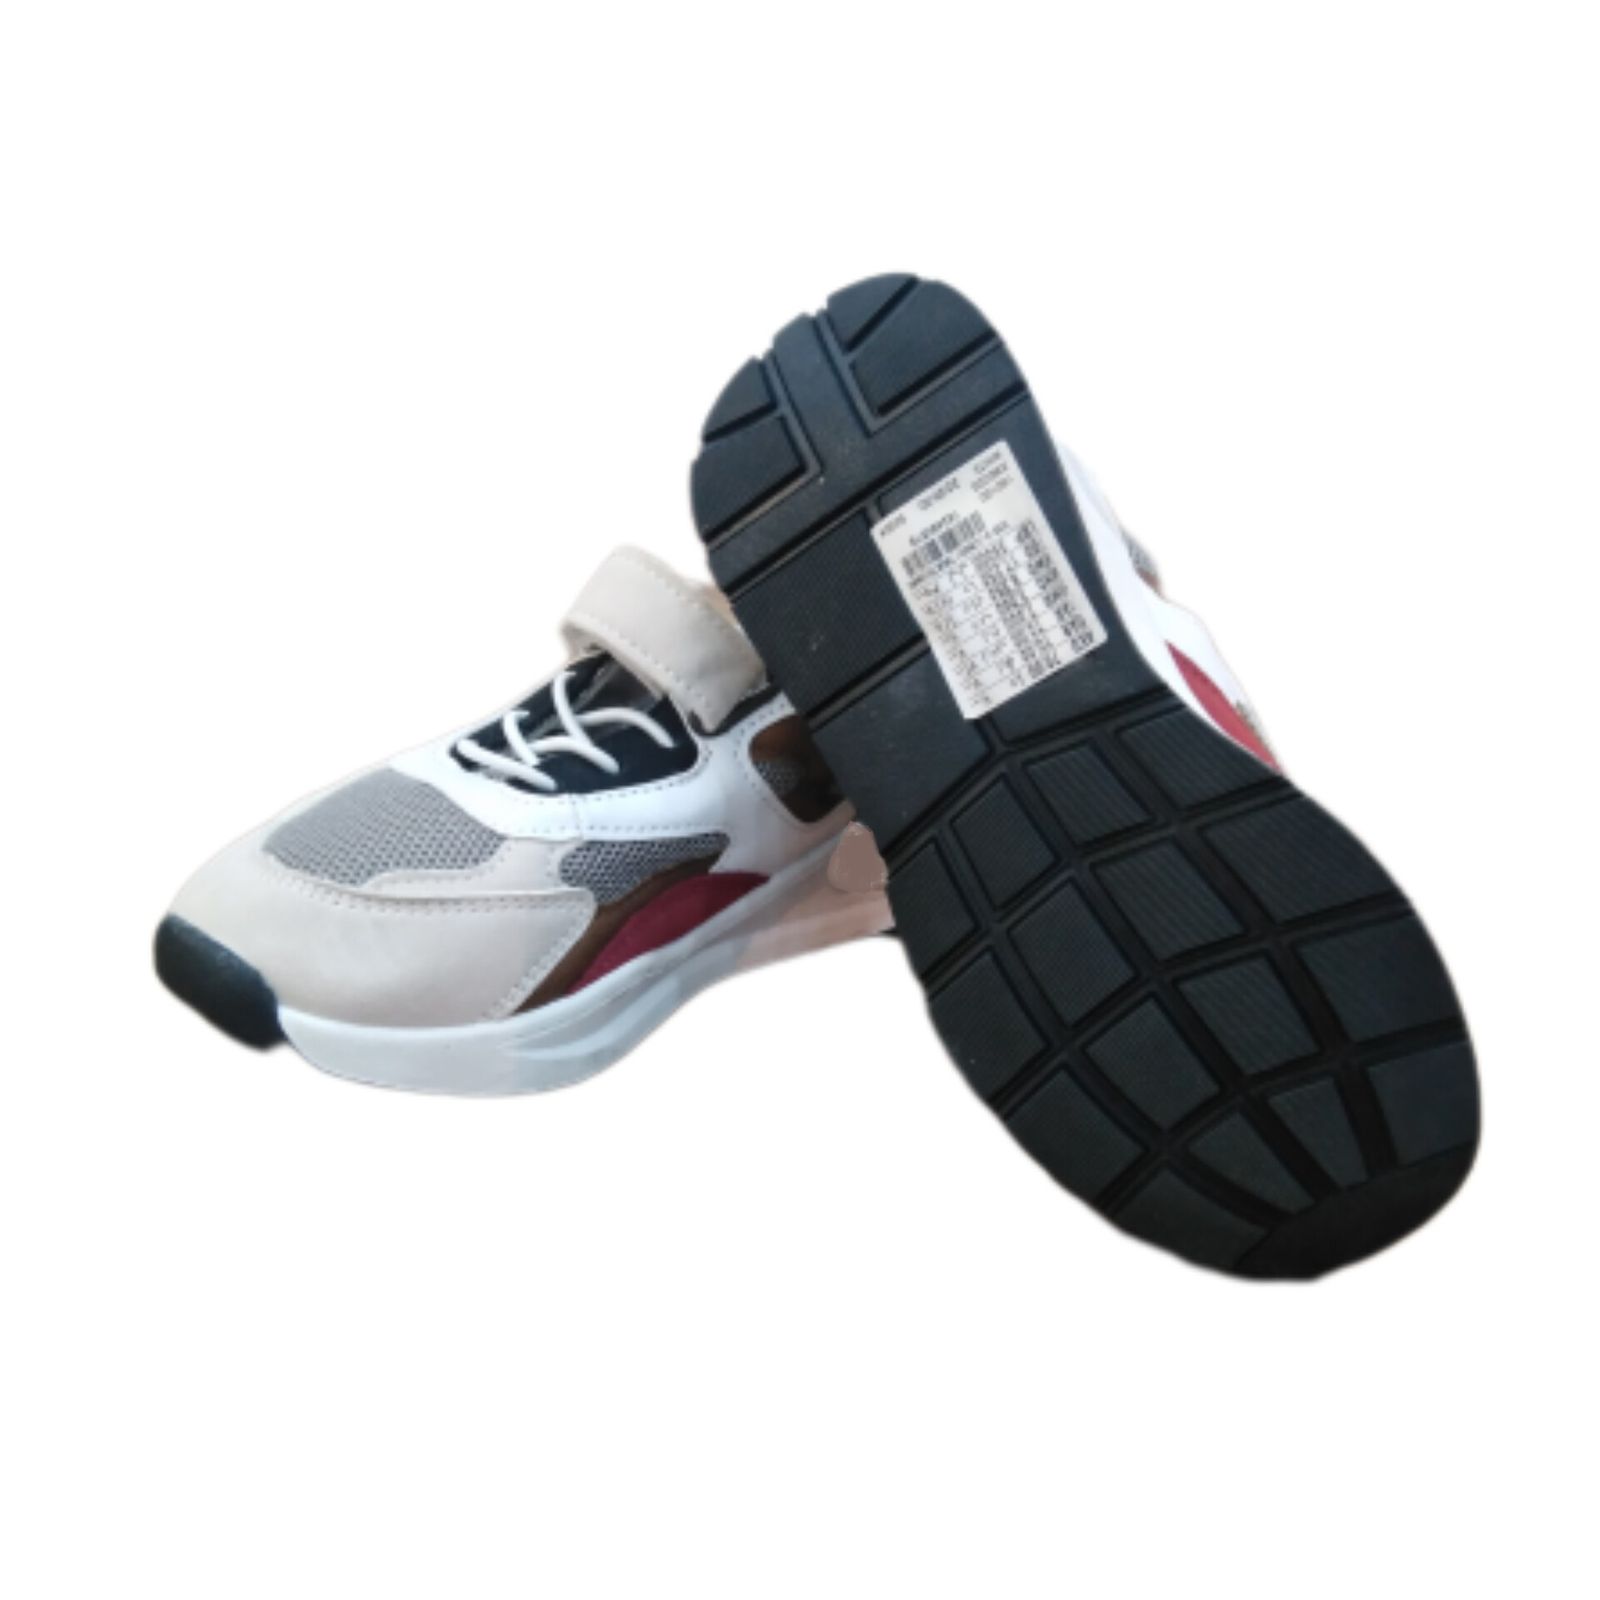  کفش مخصوص پیاده روی مکس مدل bR0857 -  - 5